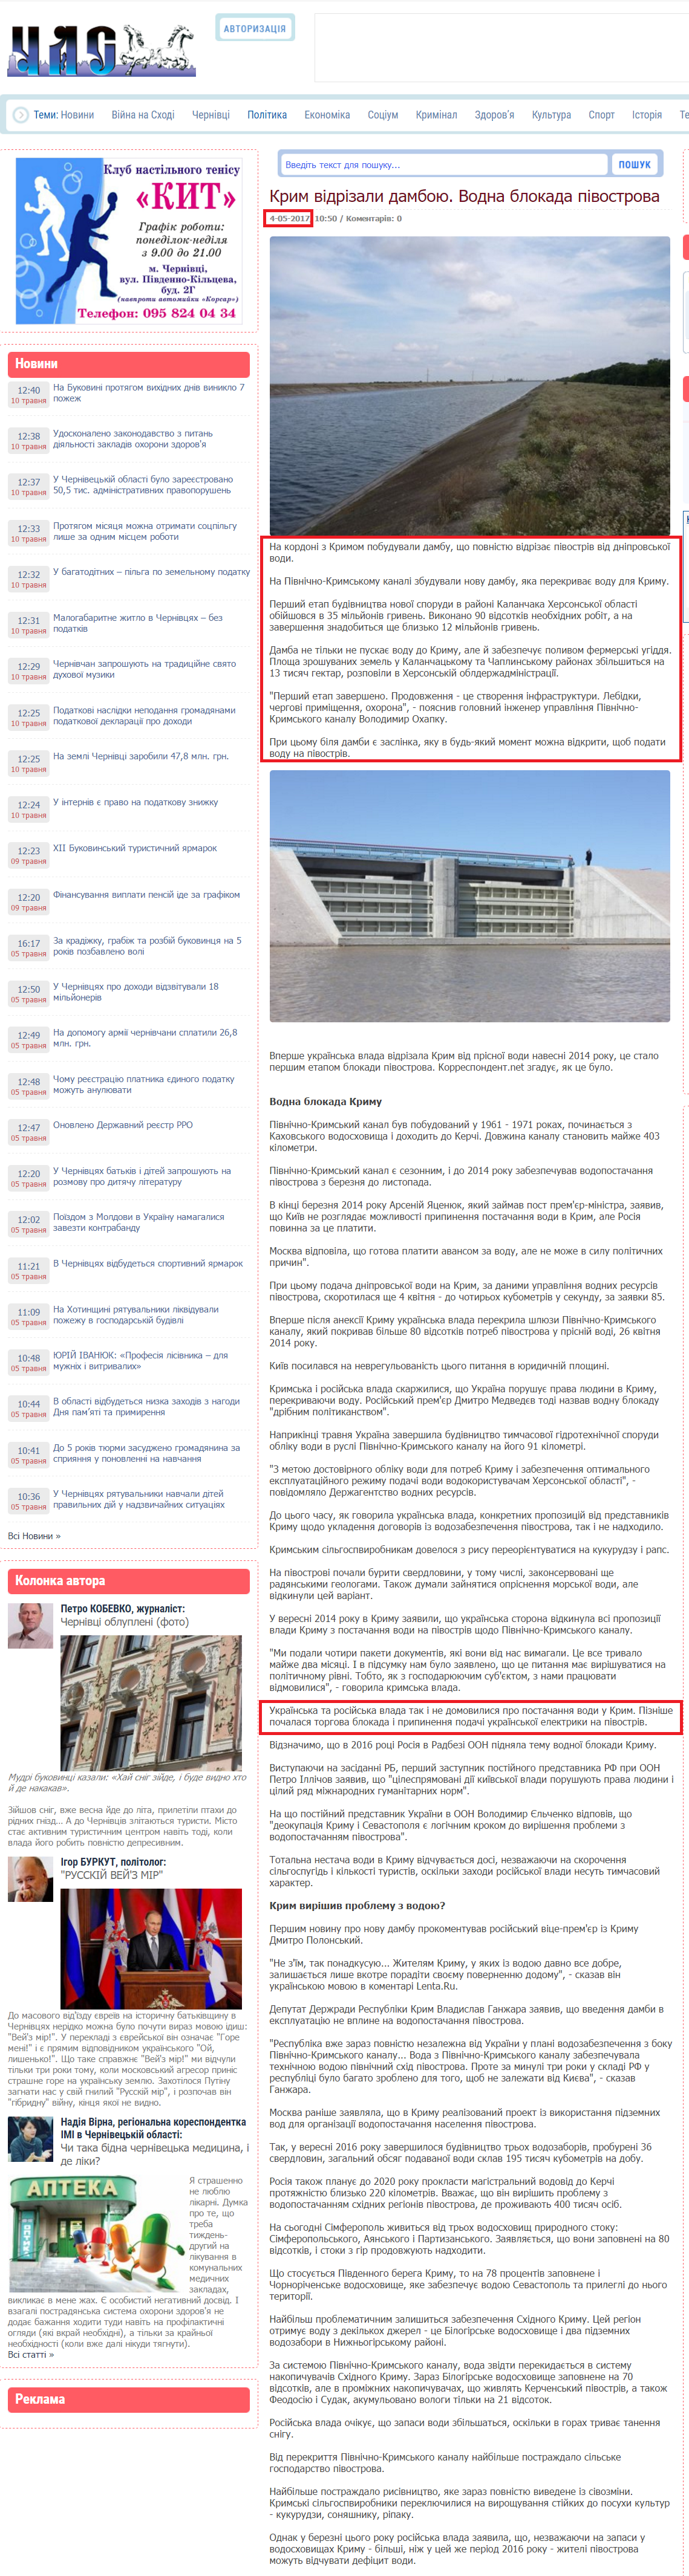 http://www.chas.cv.ua/39008-krim-vdrzali-damboyu-vodna-blokada-pvostrova.html